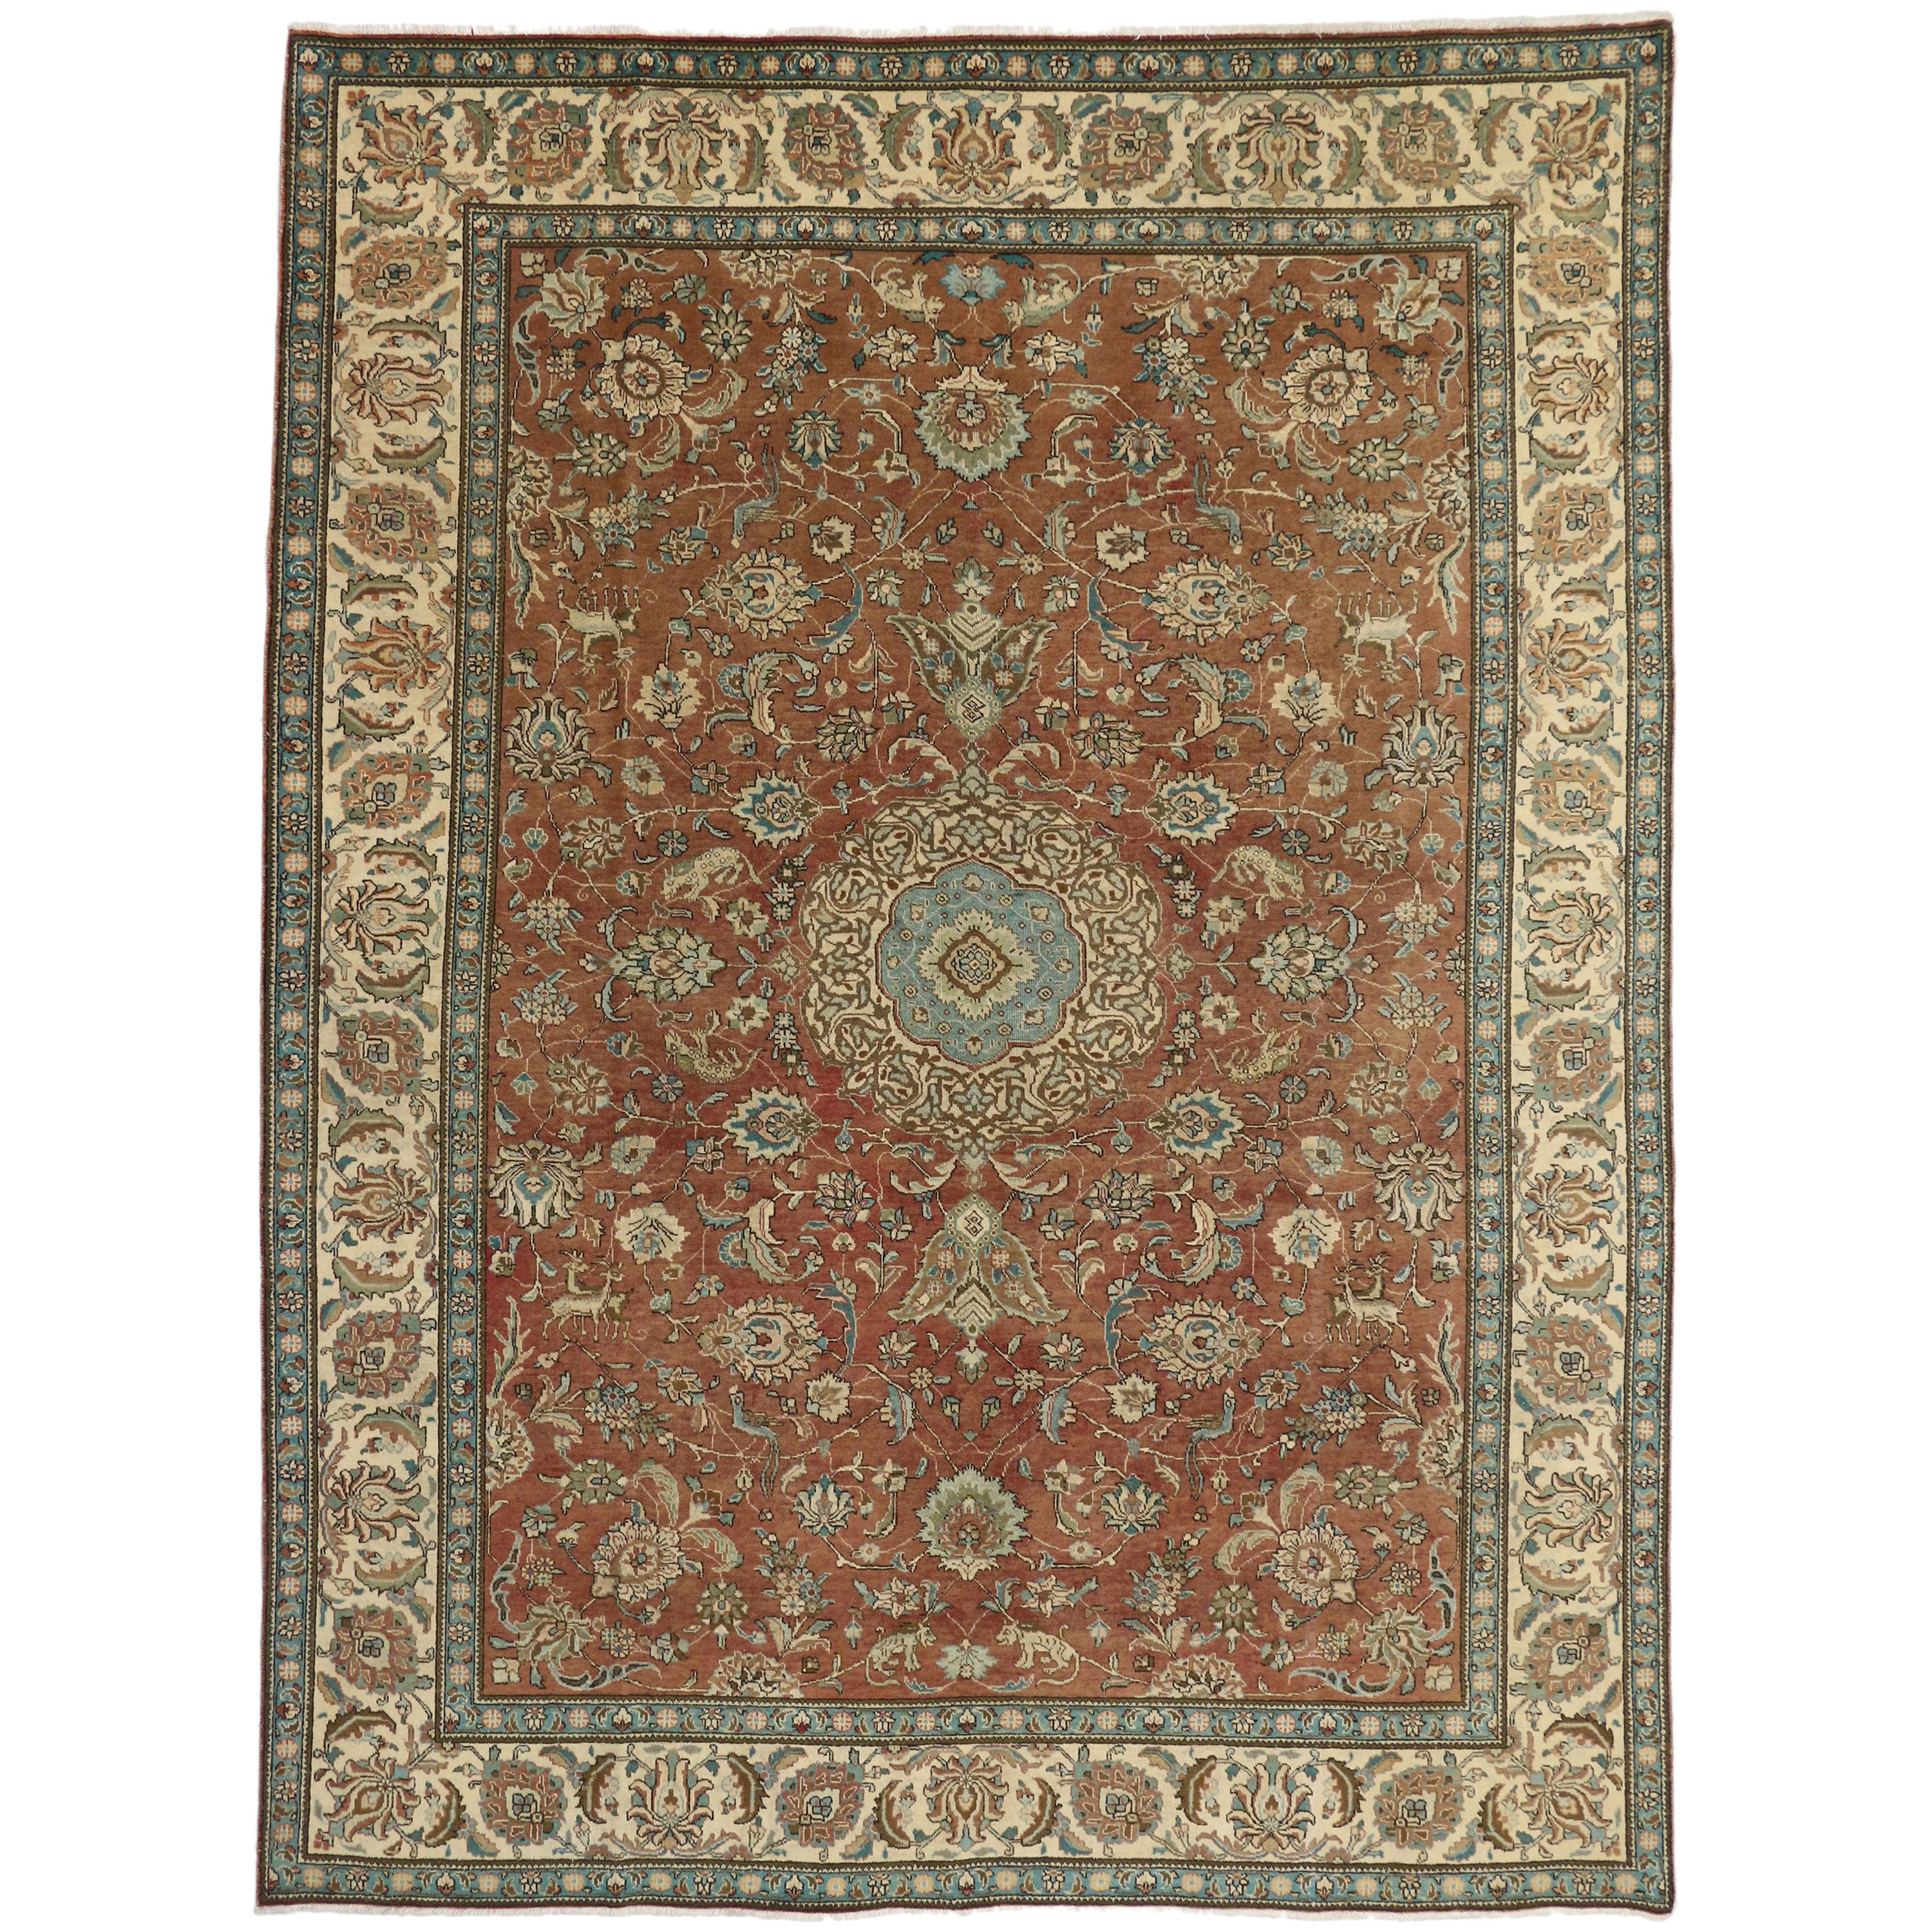 Vintage persischer Täbriz-Galerie-Teppich mit Jagd-Szene und mittelalterlichem Stil